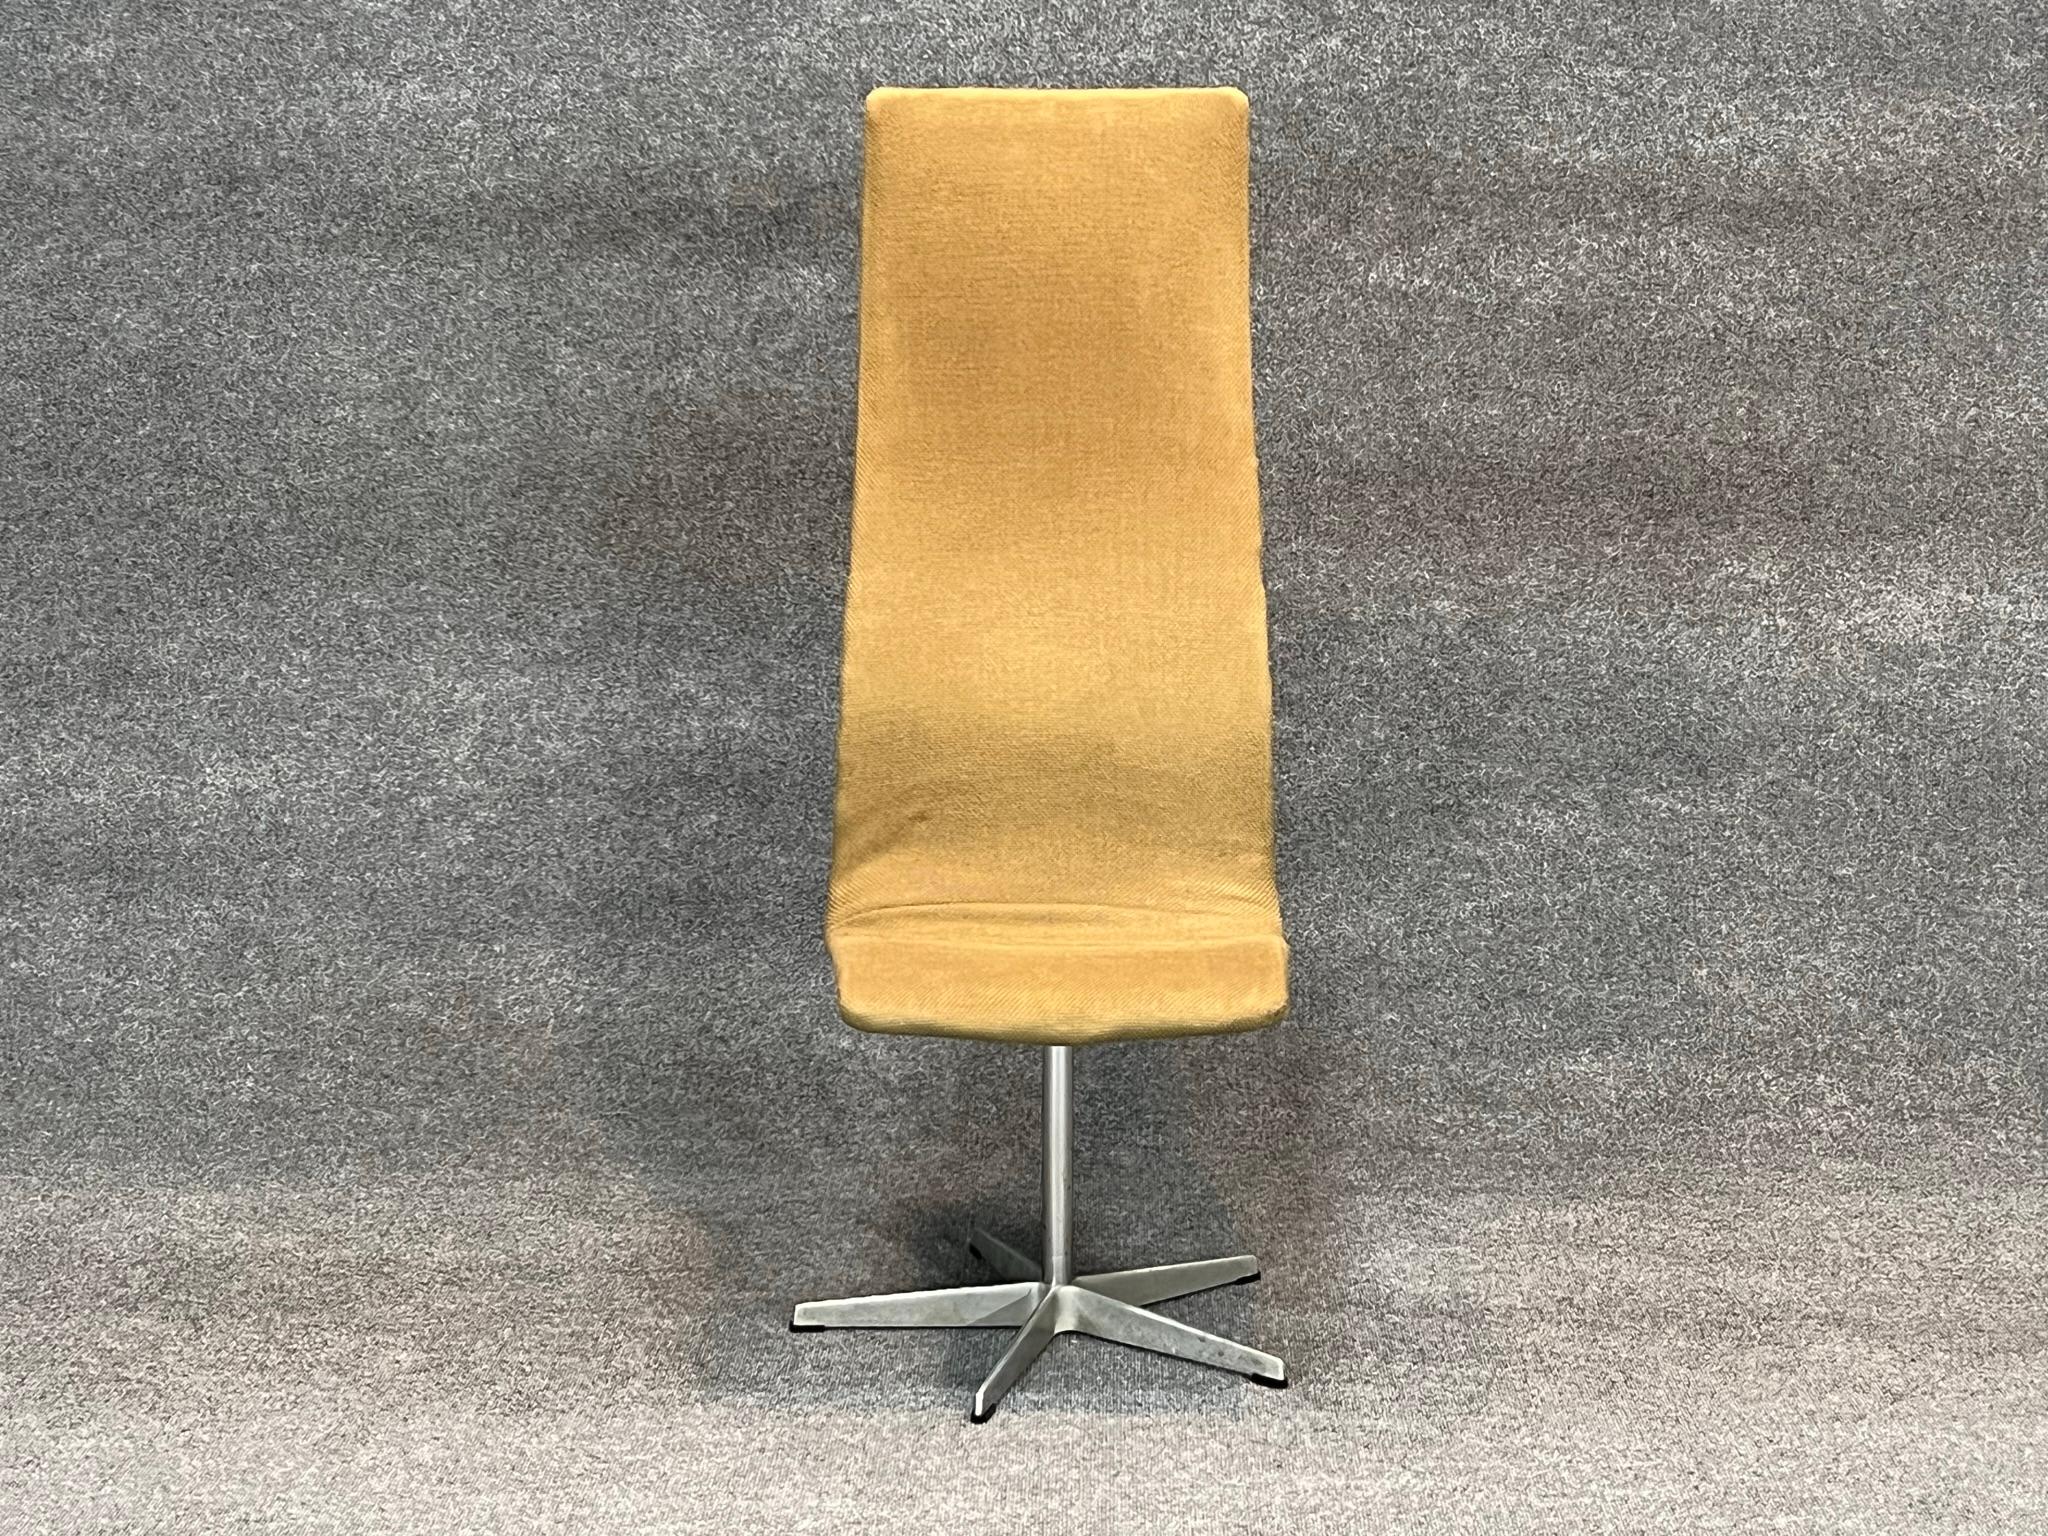 Arne Jacobsen for Fritz Hansen, 'Oxford' high backed desk chair, aluminium, bois, tissu d'ameublement, Royaume-Uni, design 1965, production récente.

La version originale de la chaise 